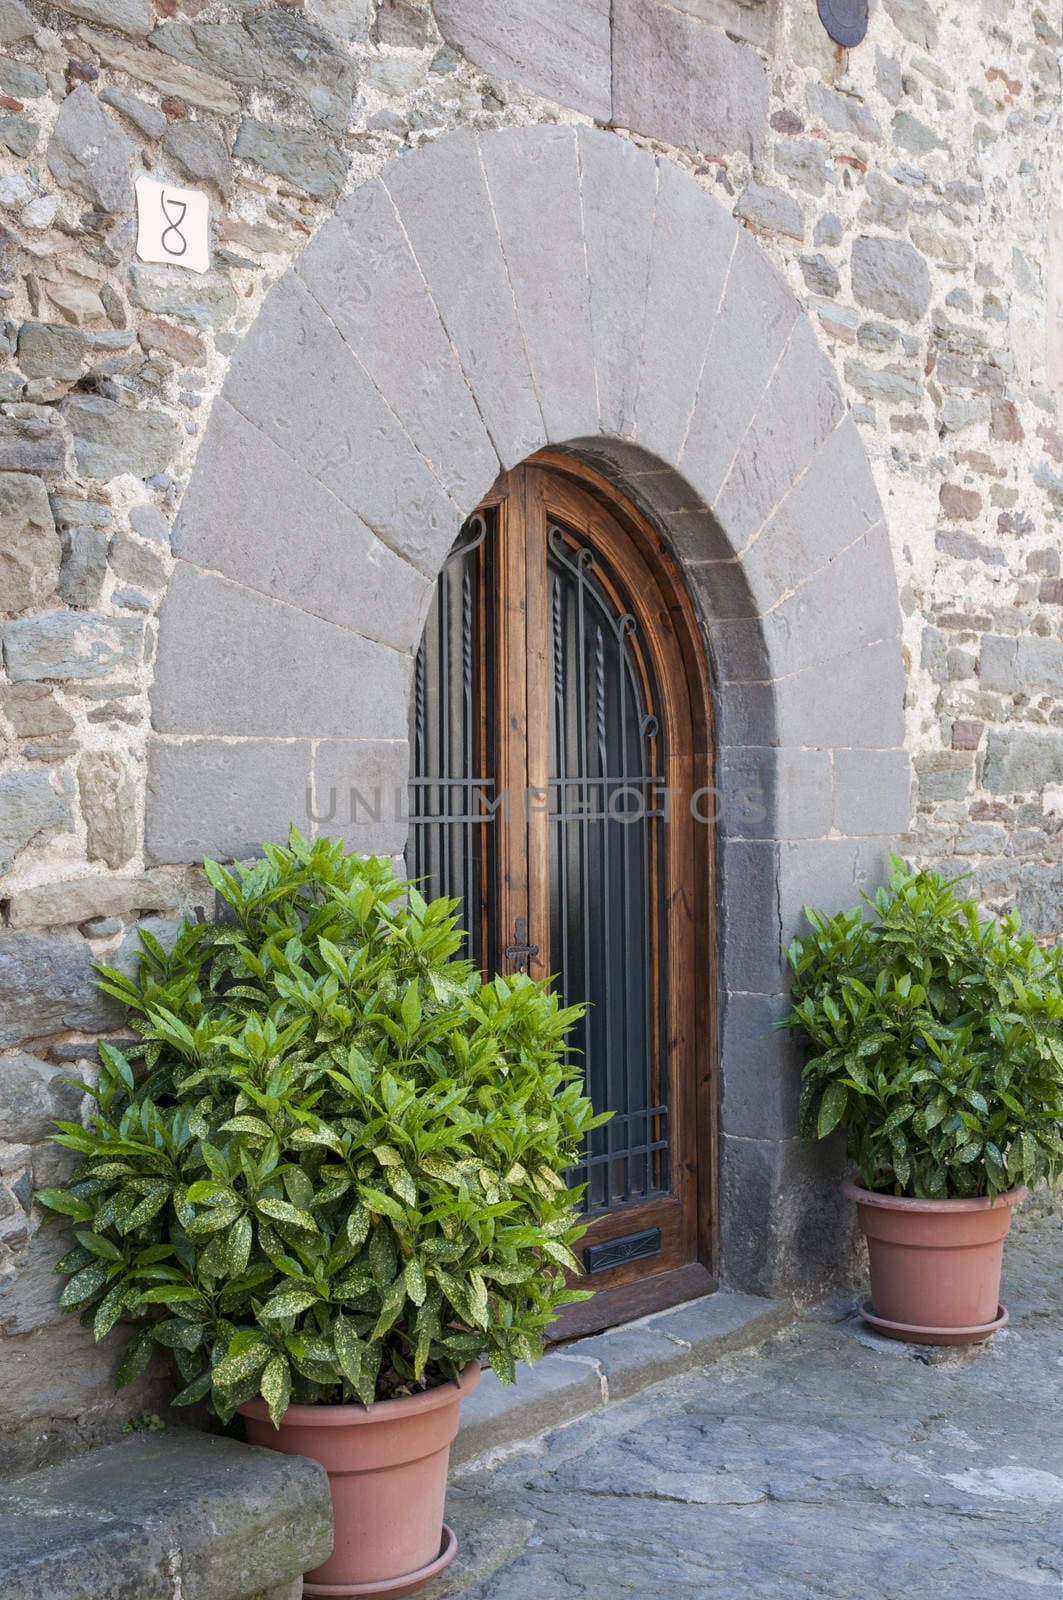 decorative door with plants